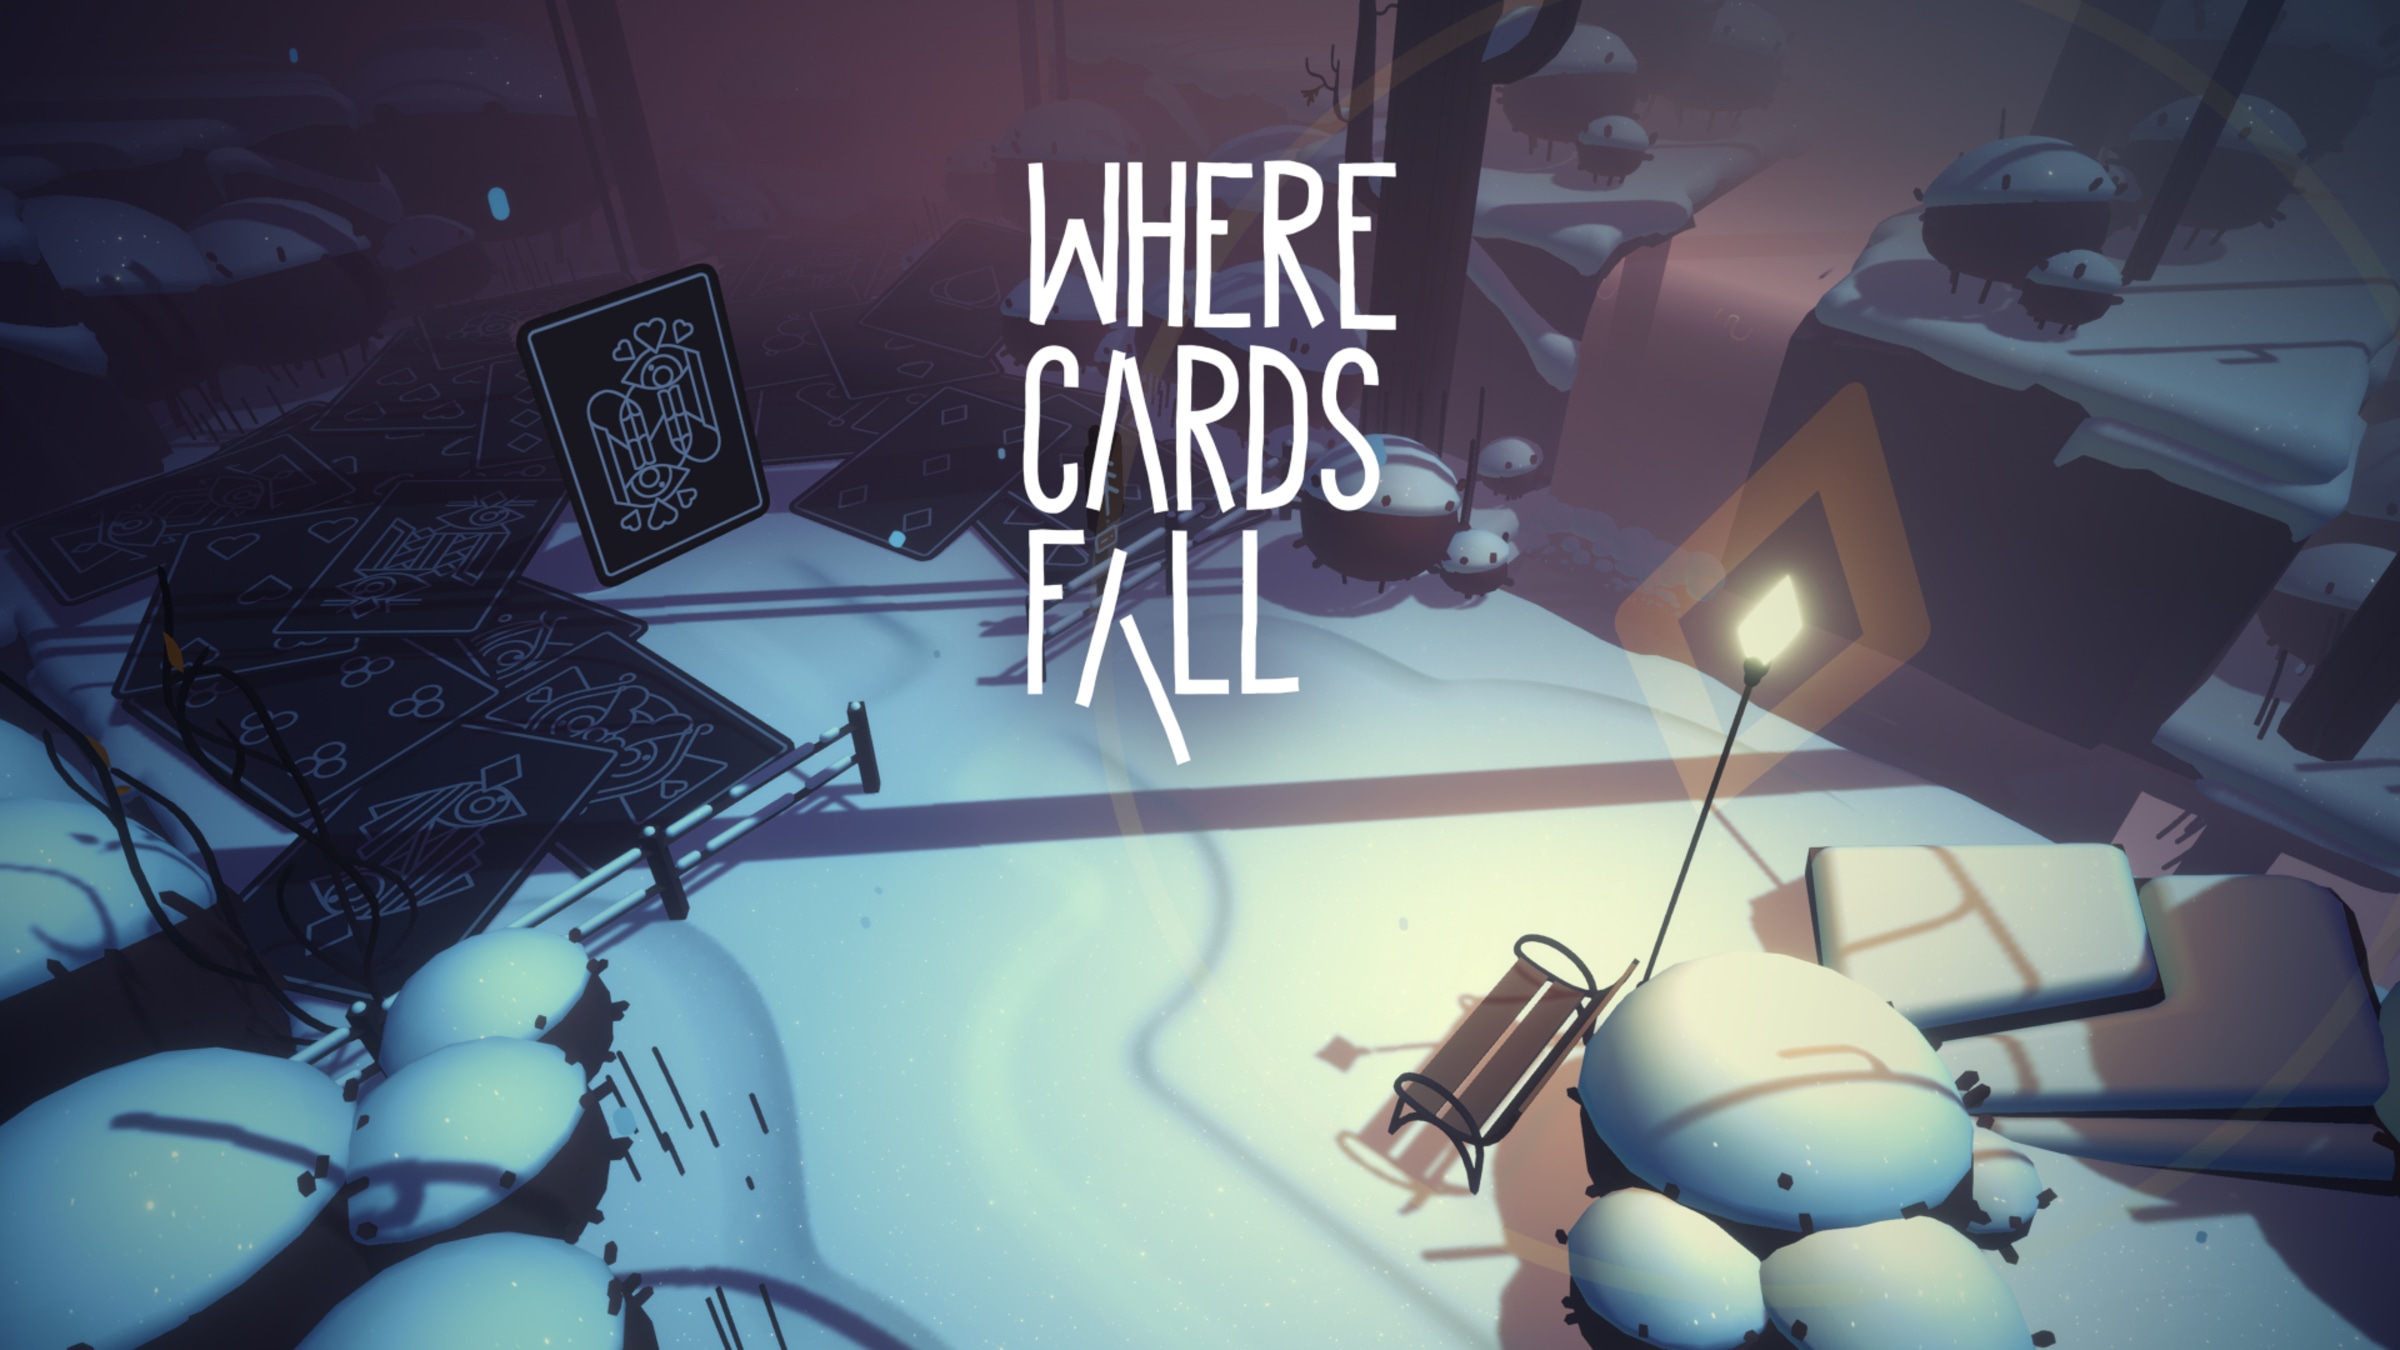 Análise: Where Cards Fall (Switch) é um jogo único e casual de